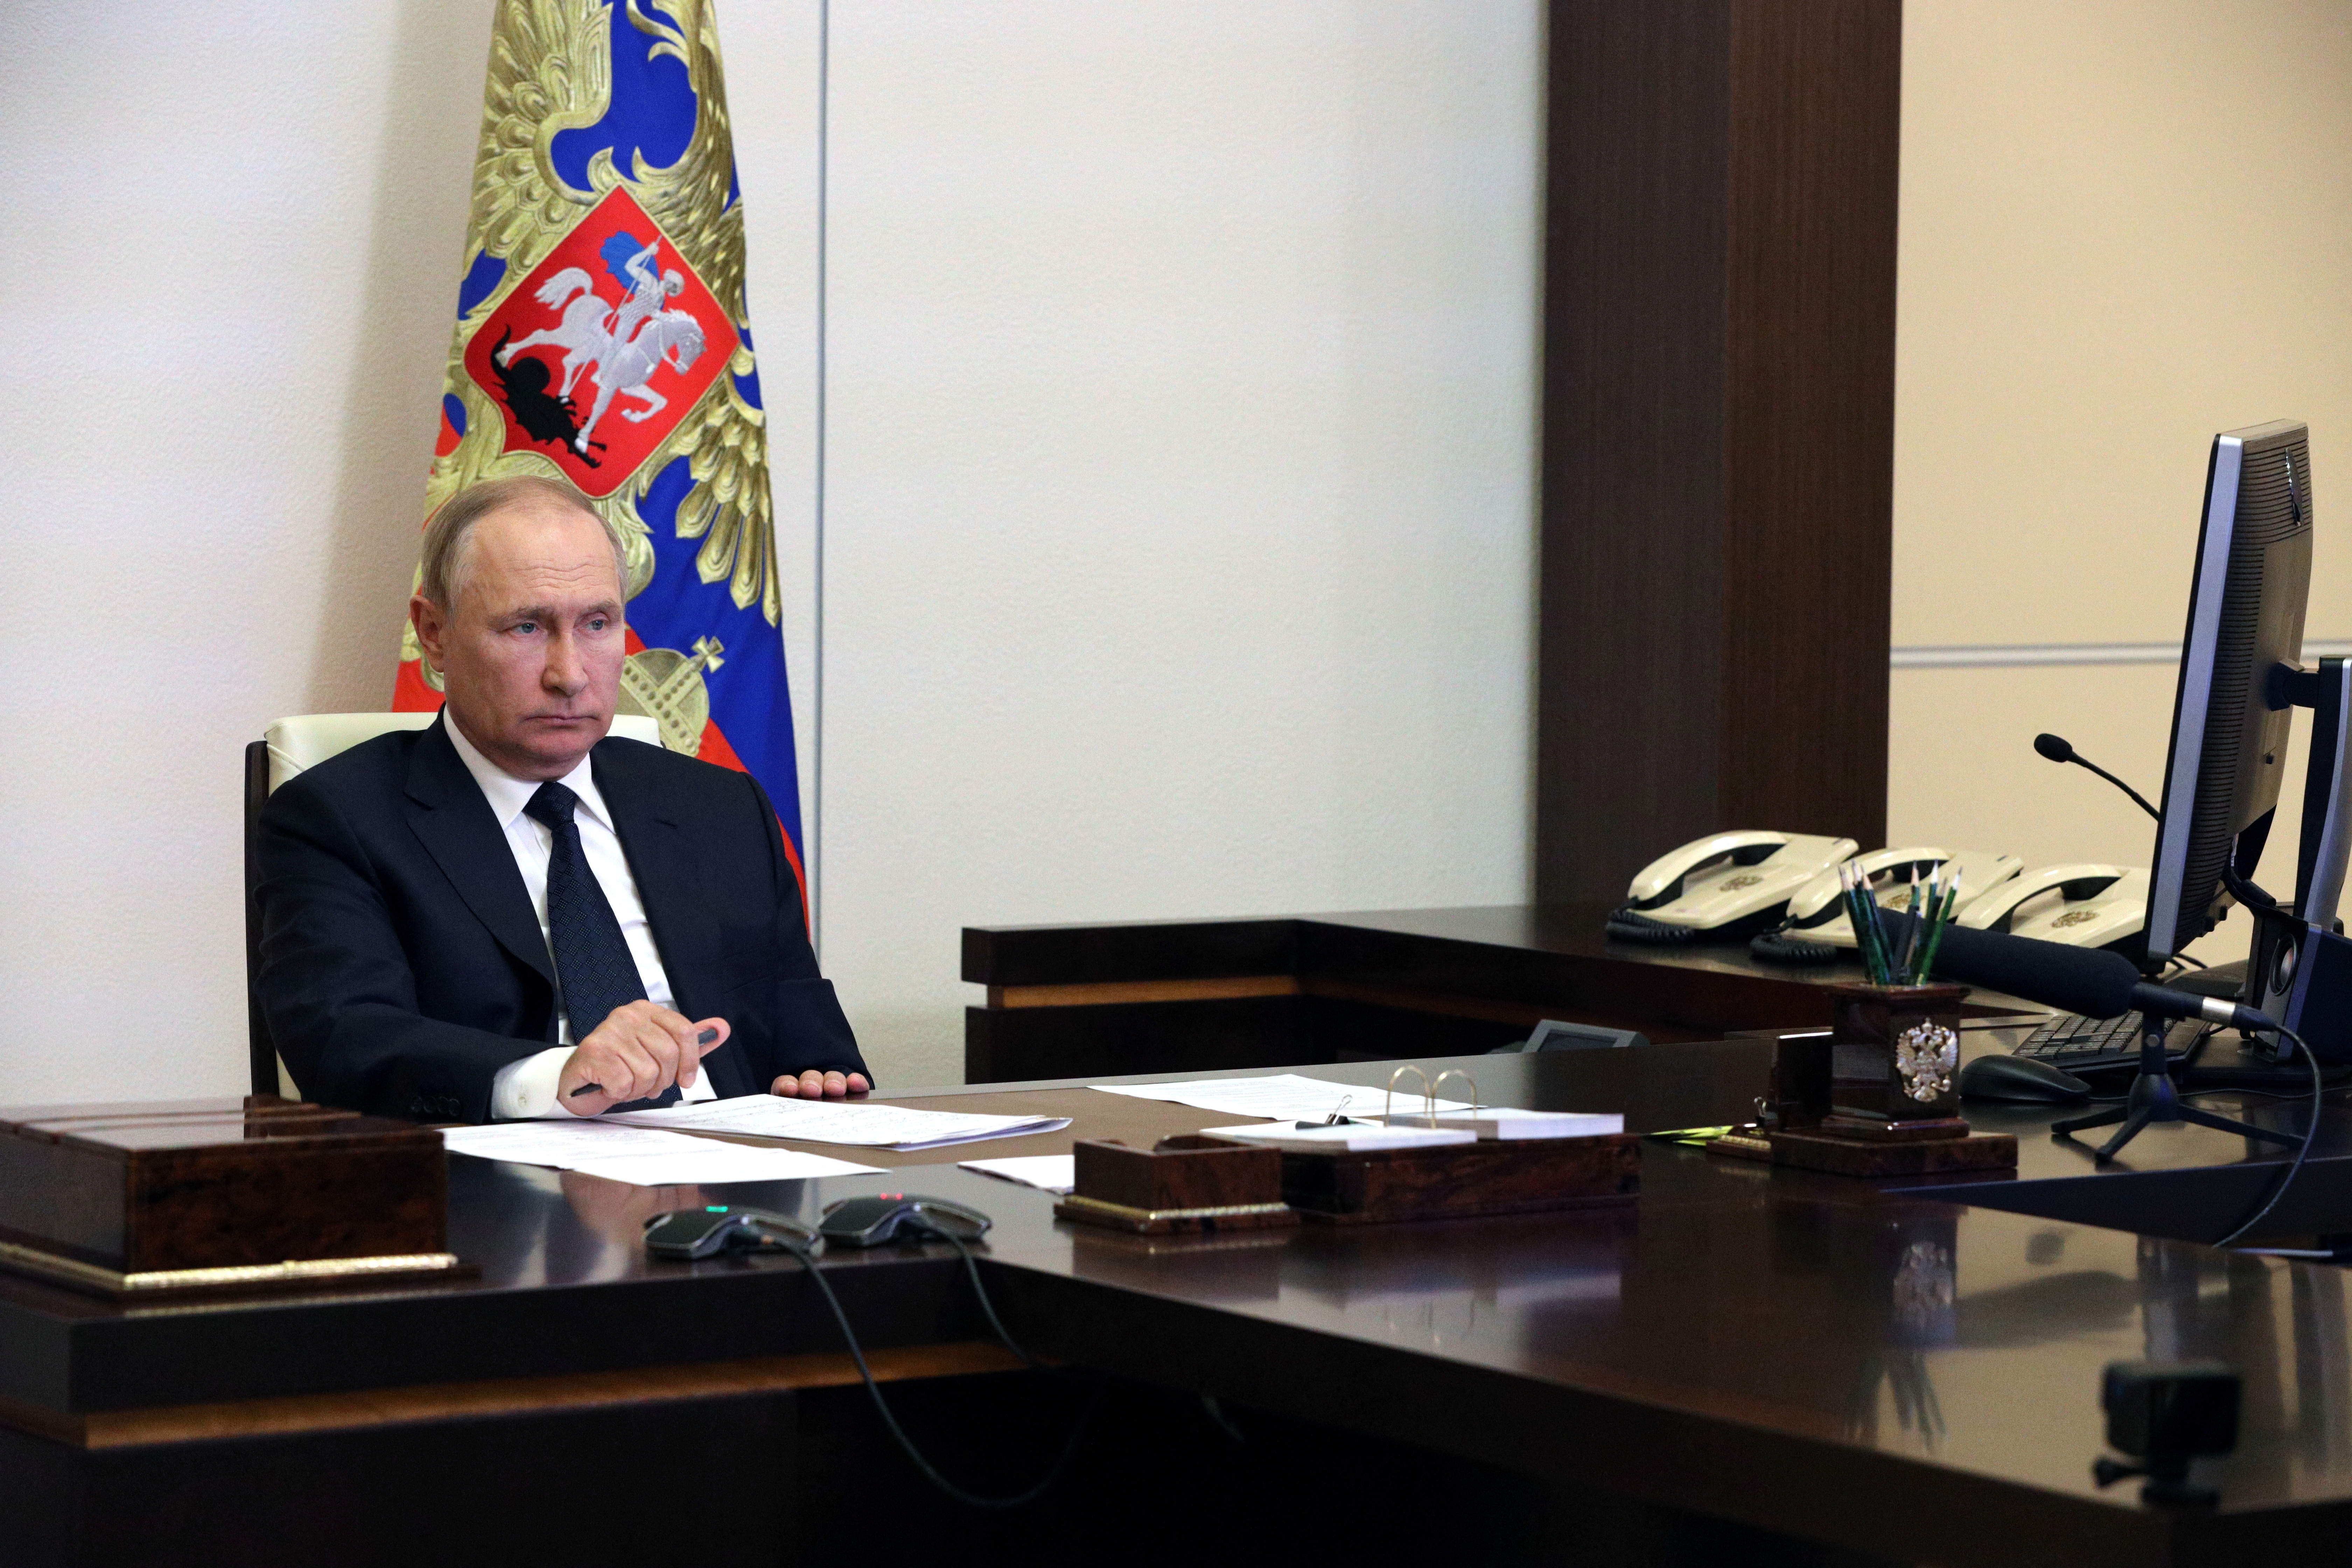 El jefe de estado ruso Vladimir Putin durante una reunión en el Kremlin, Moscú este 24 de agosto (Reuters)